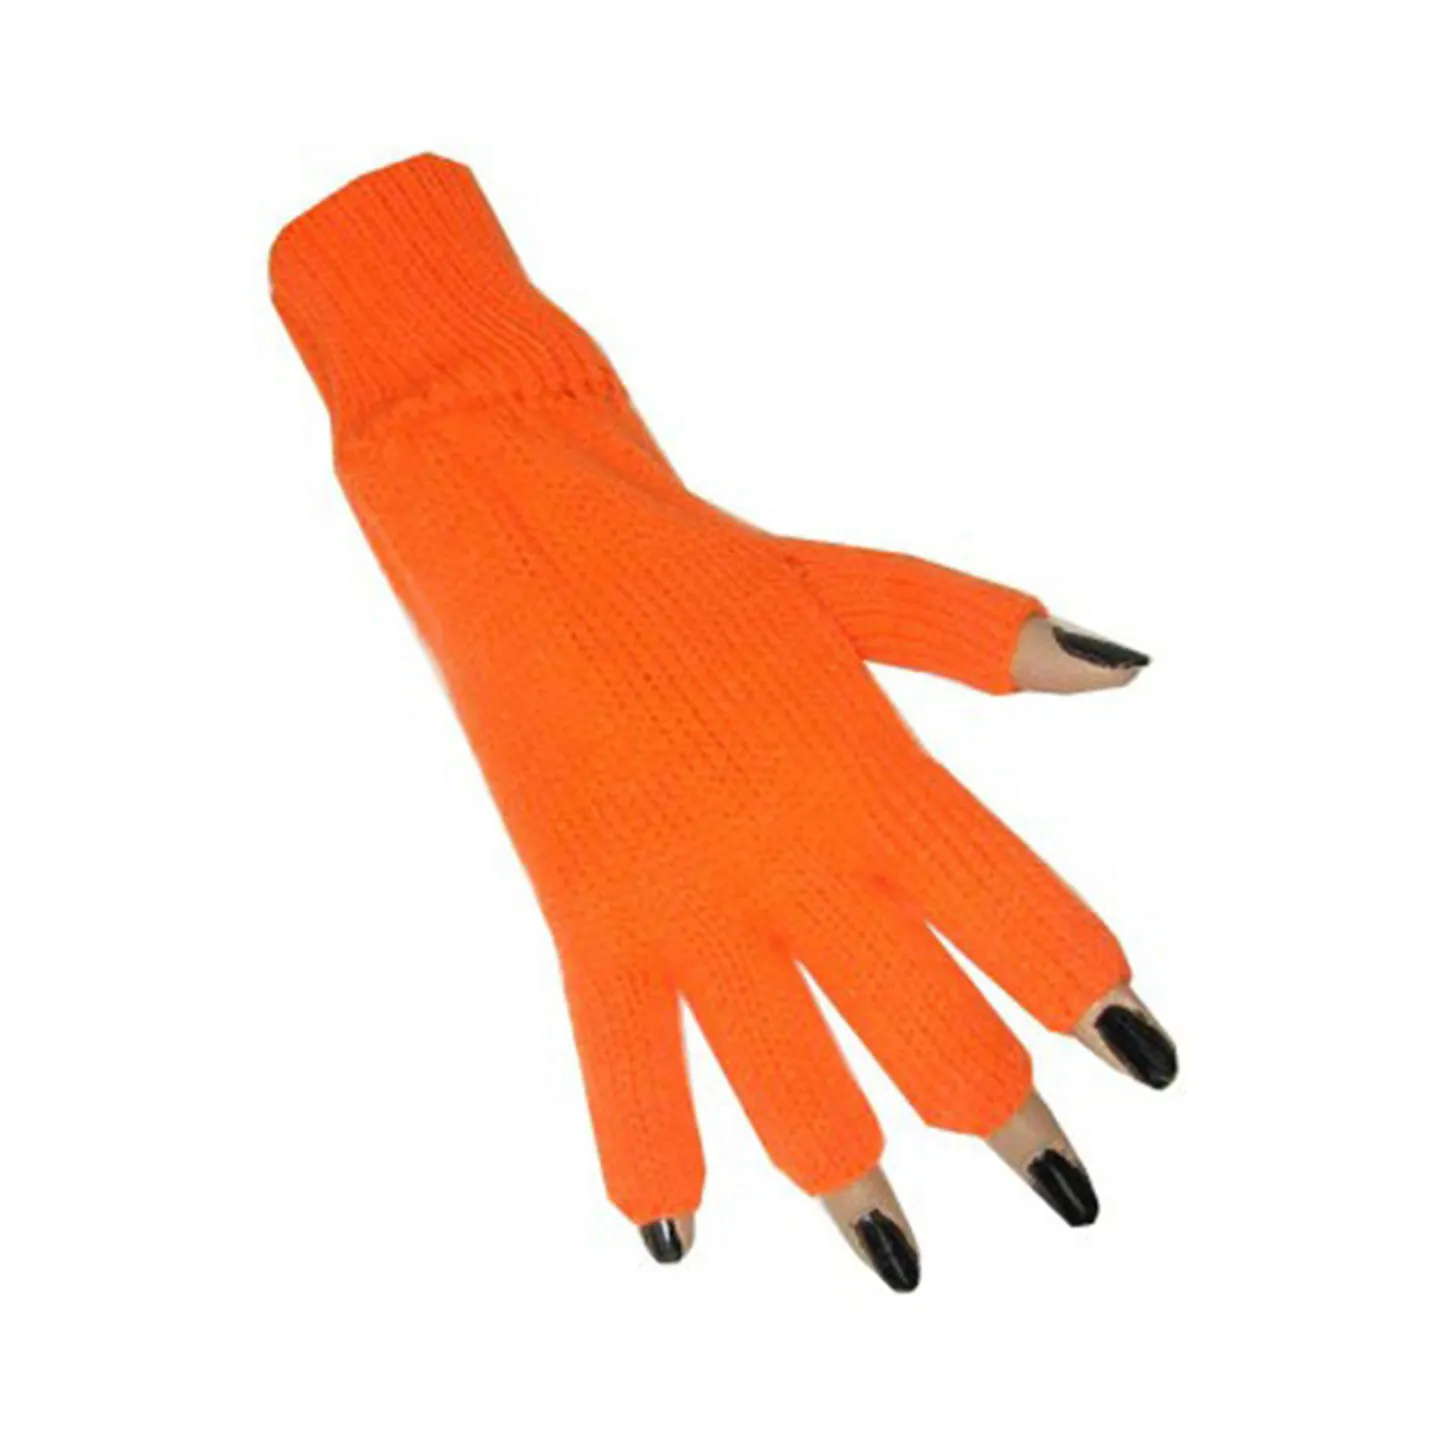 Koningsdag handschoenen oranje.